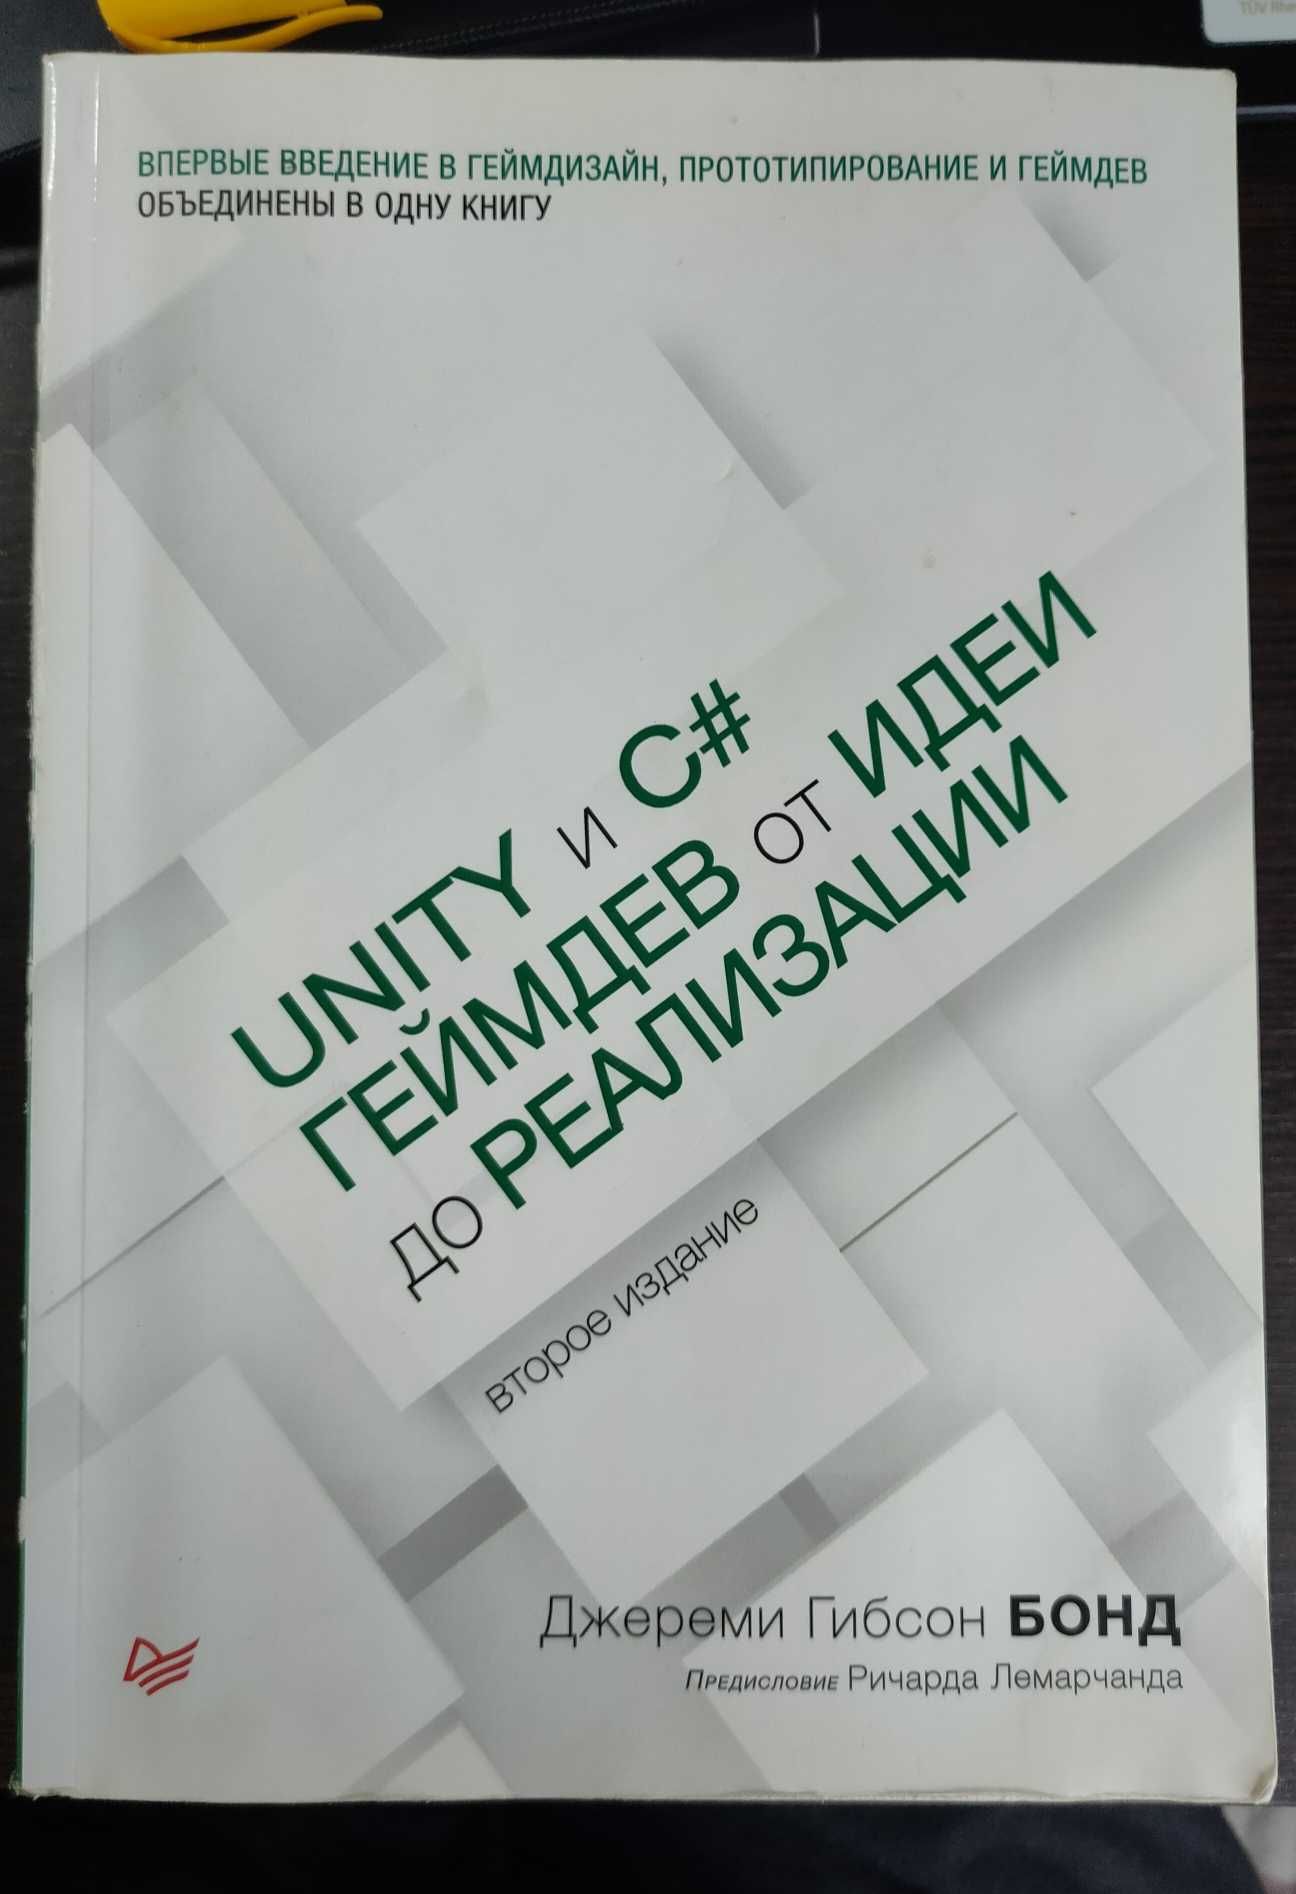 Unity и C#. Геймдев от идеи до реализации